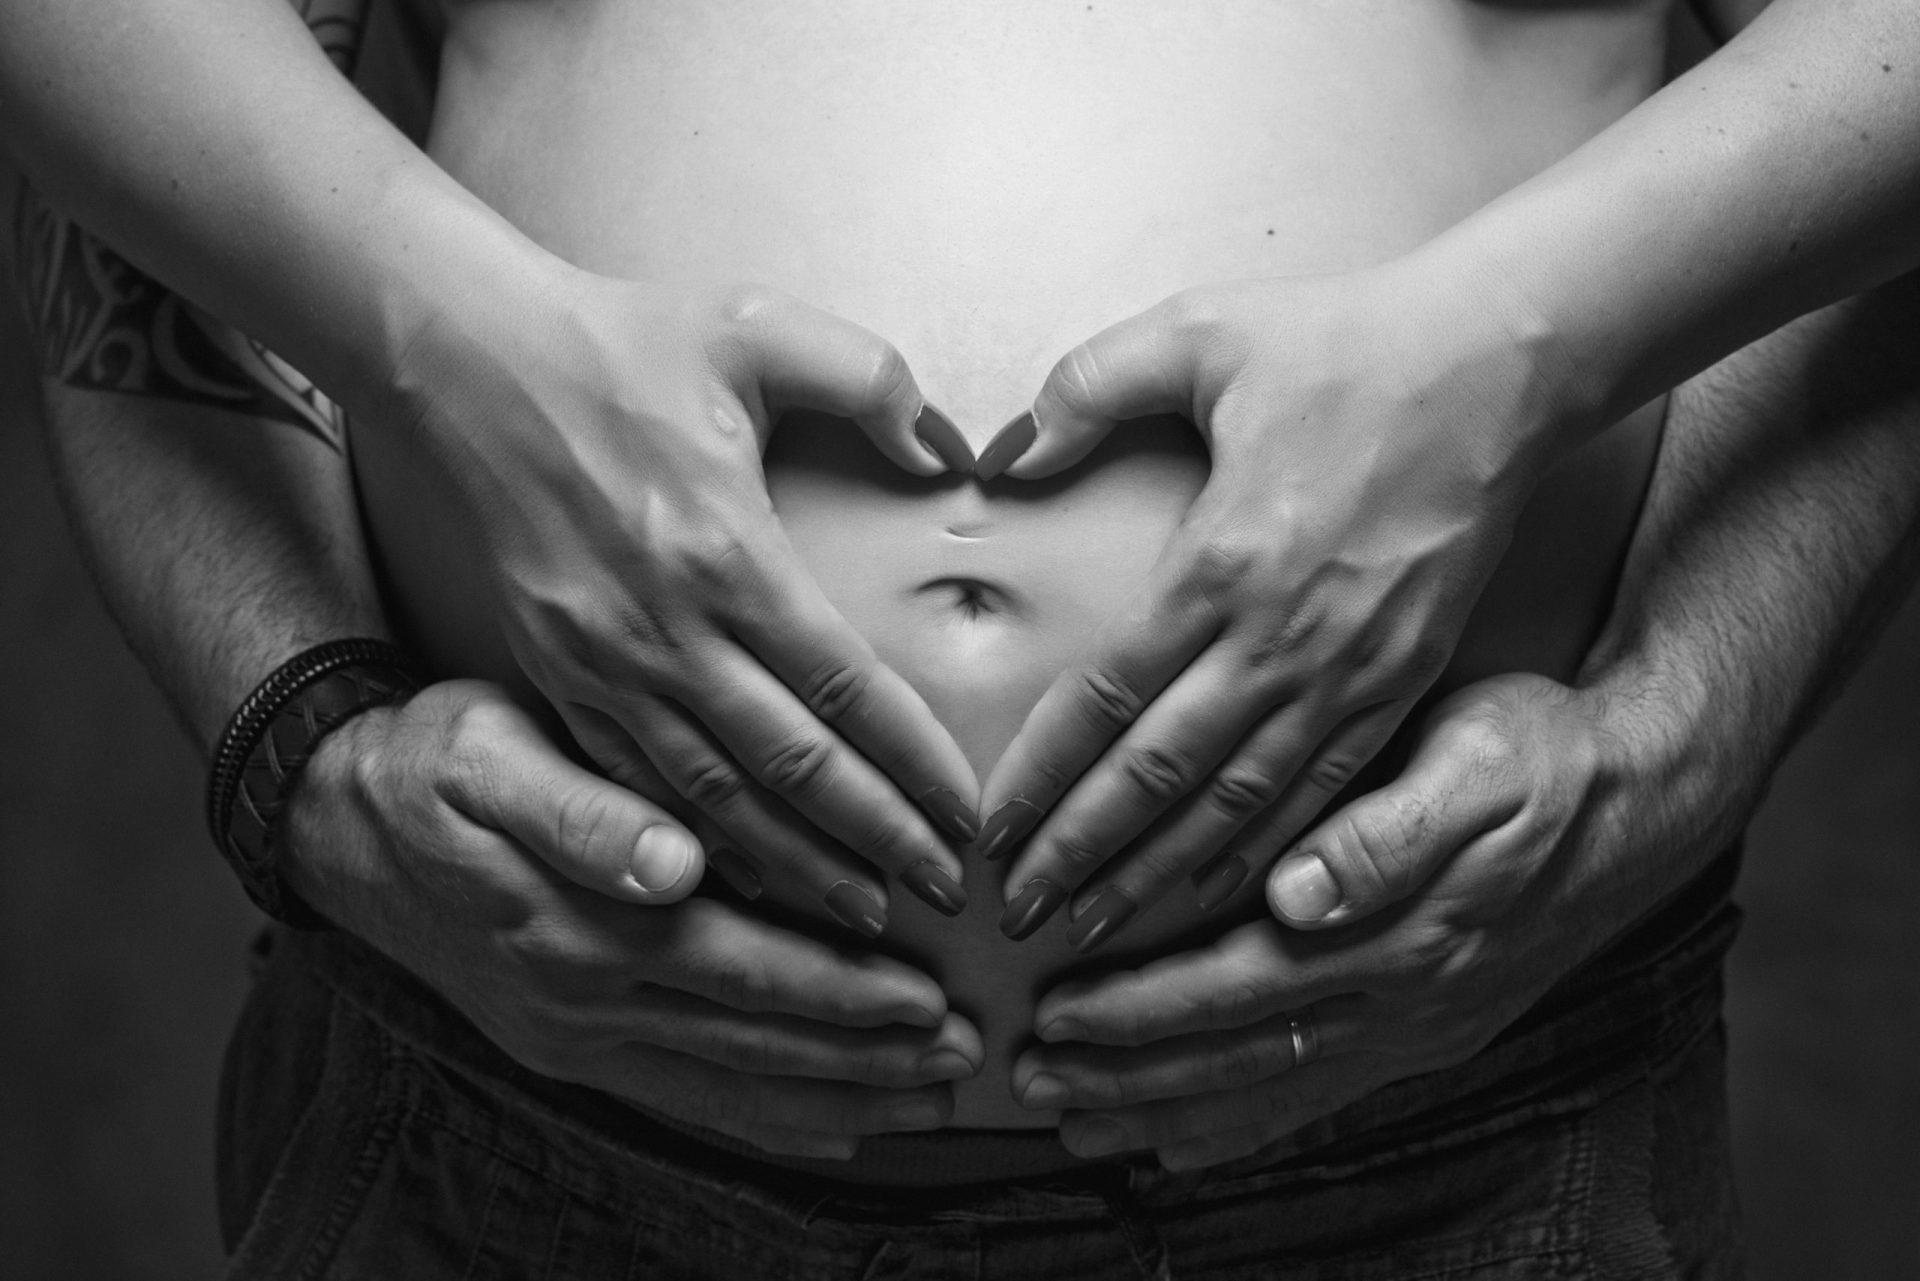 Portugueses dispostos a preservar fertilidade por doença ou para adiar parentalidade